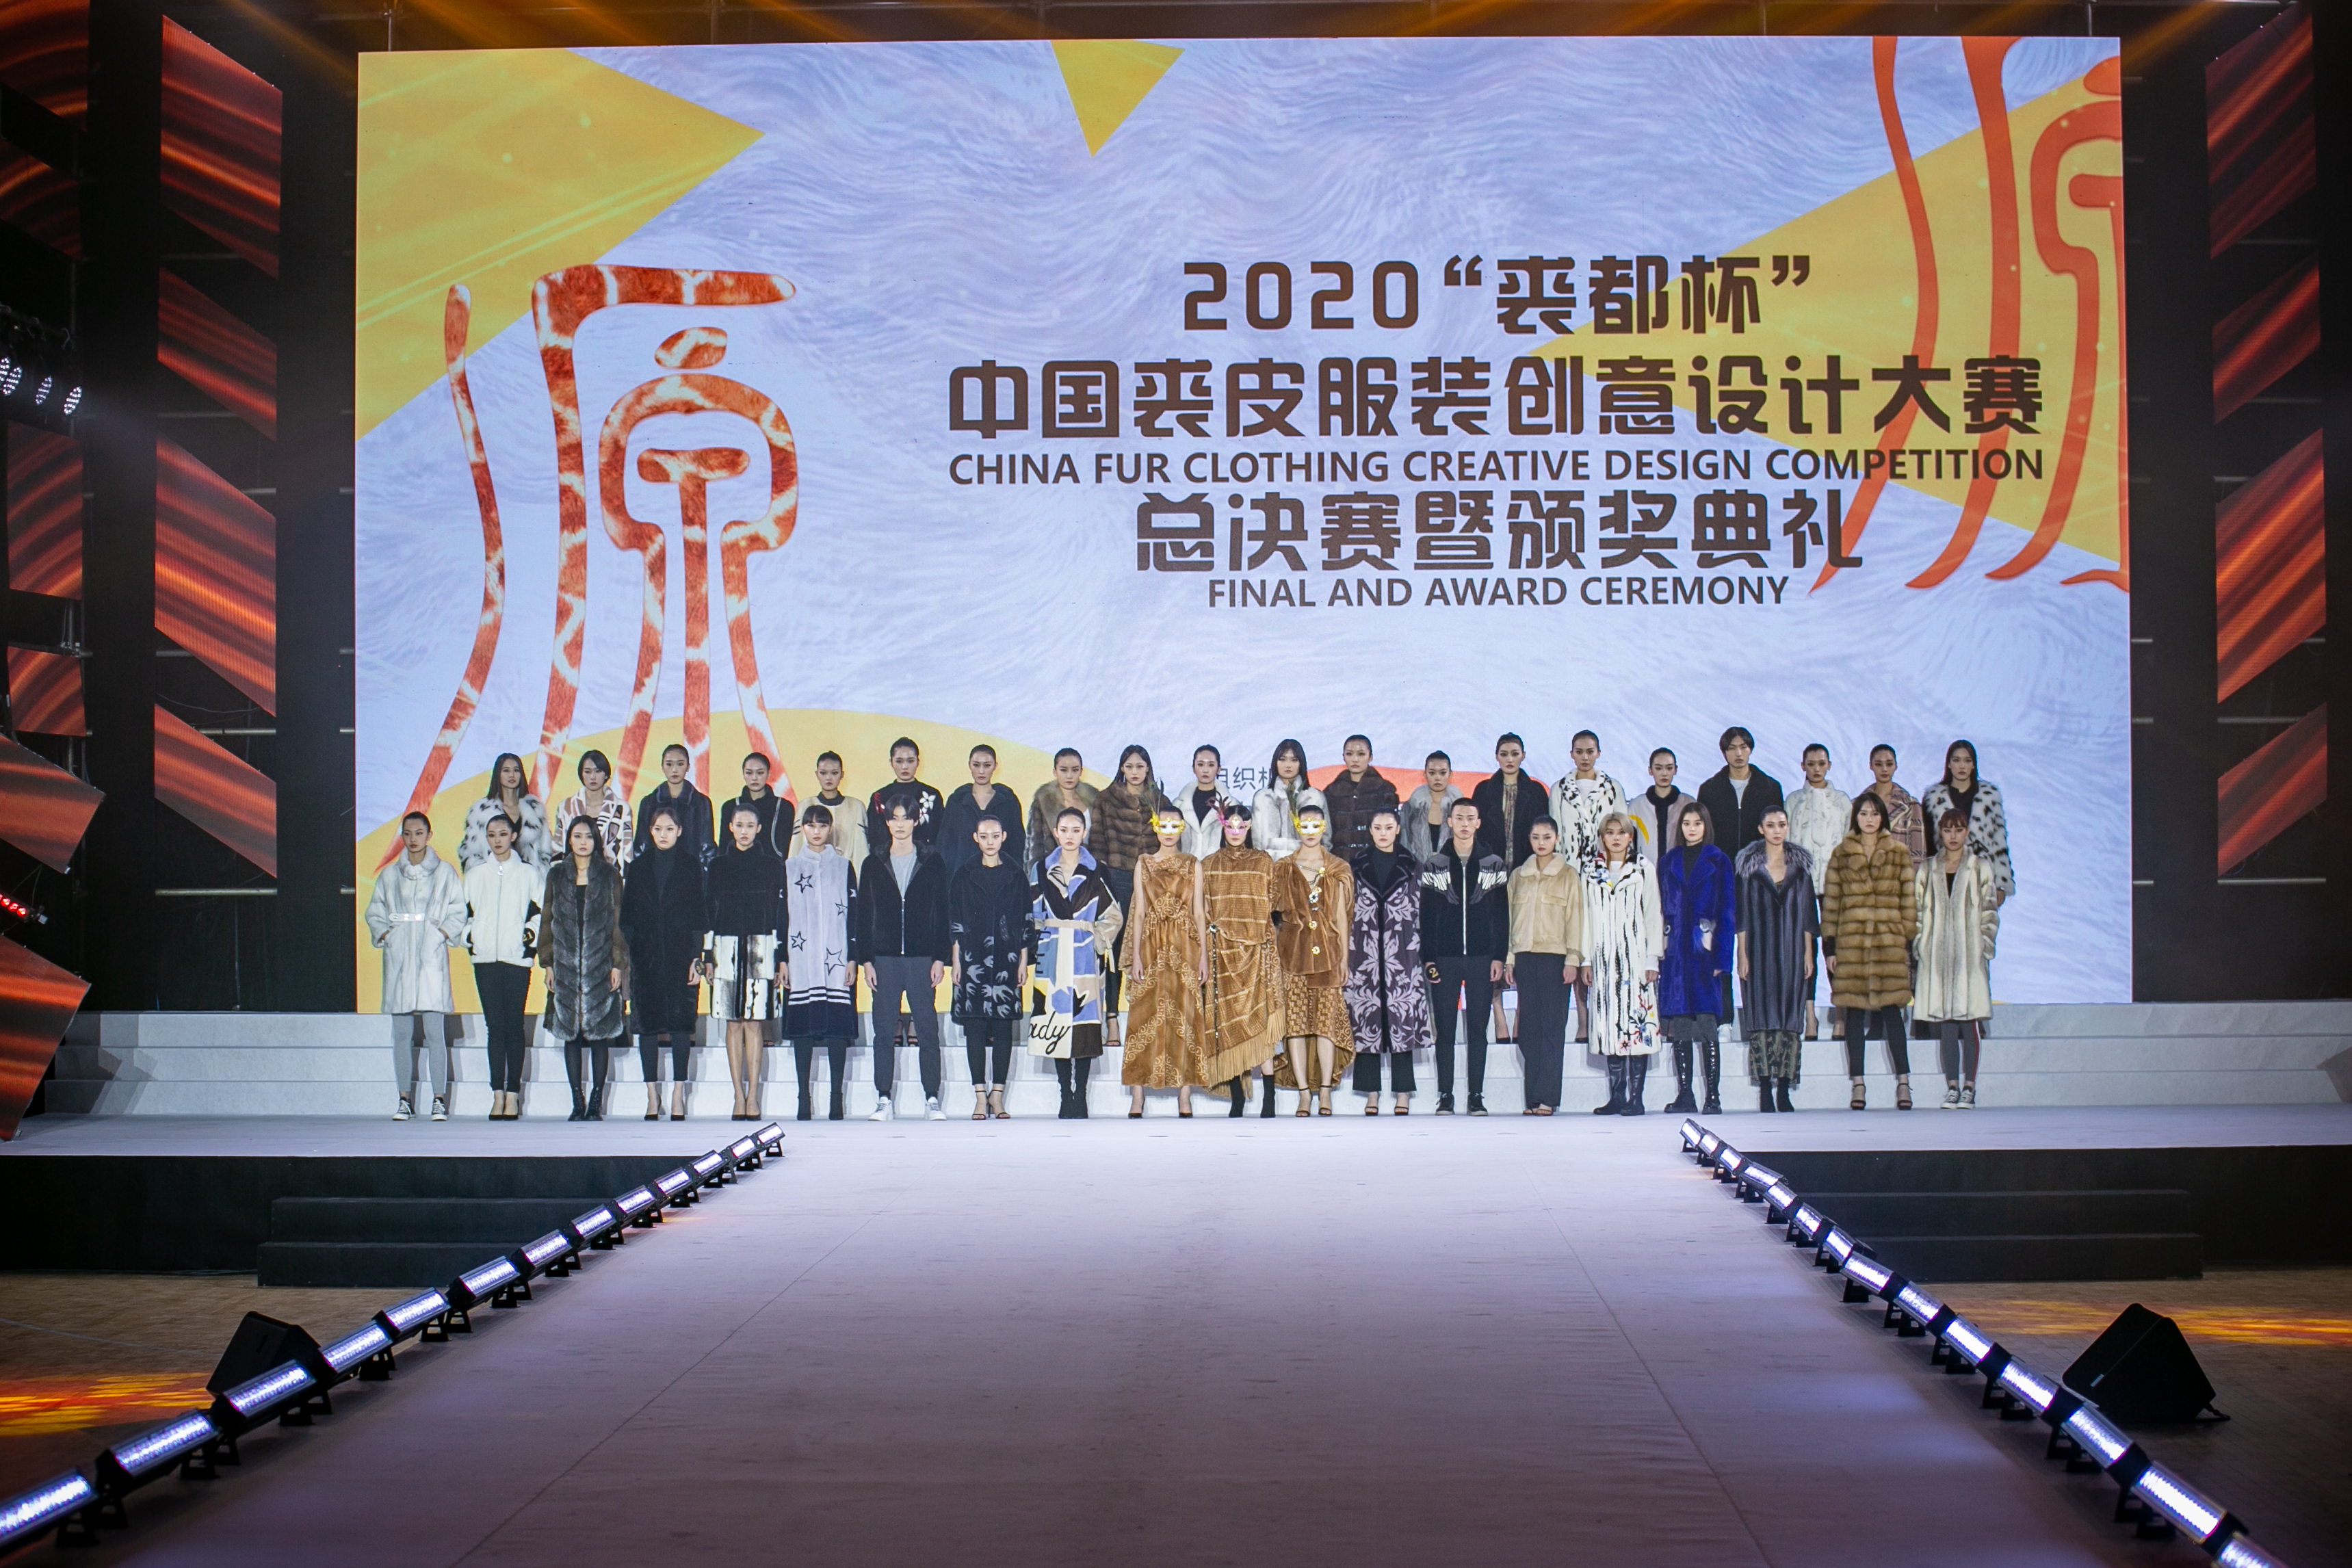 2020“裘都杯”中国裘皮服装创意设计大赛总决赛及颁奖盛典展示“裘祖文化” 